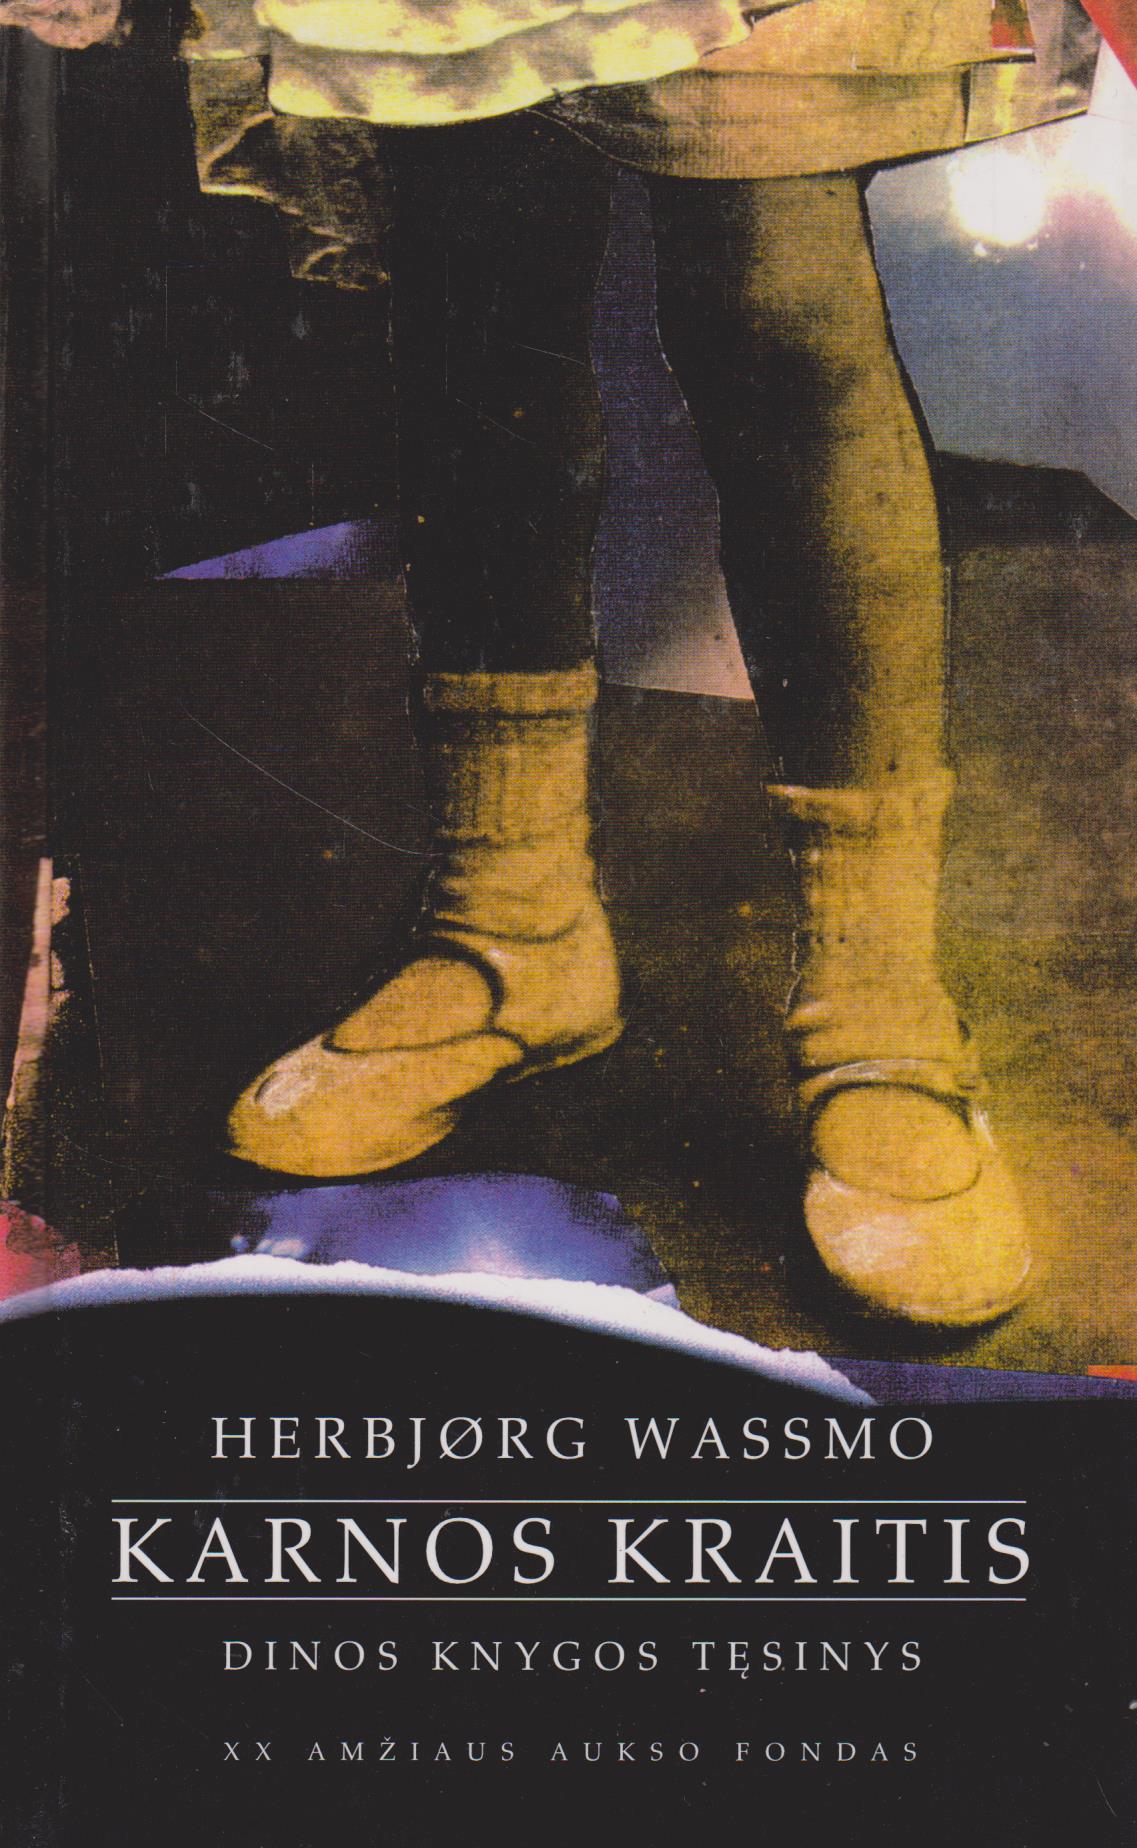 Hebjorg Wassmo - Dinos trilogija (1,2,3)